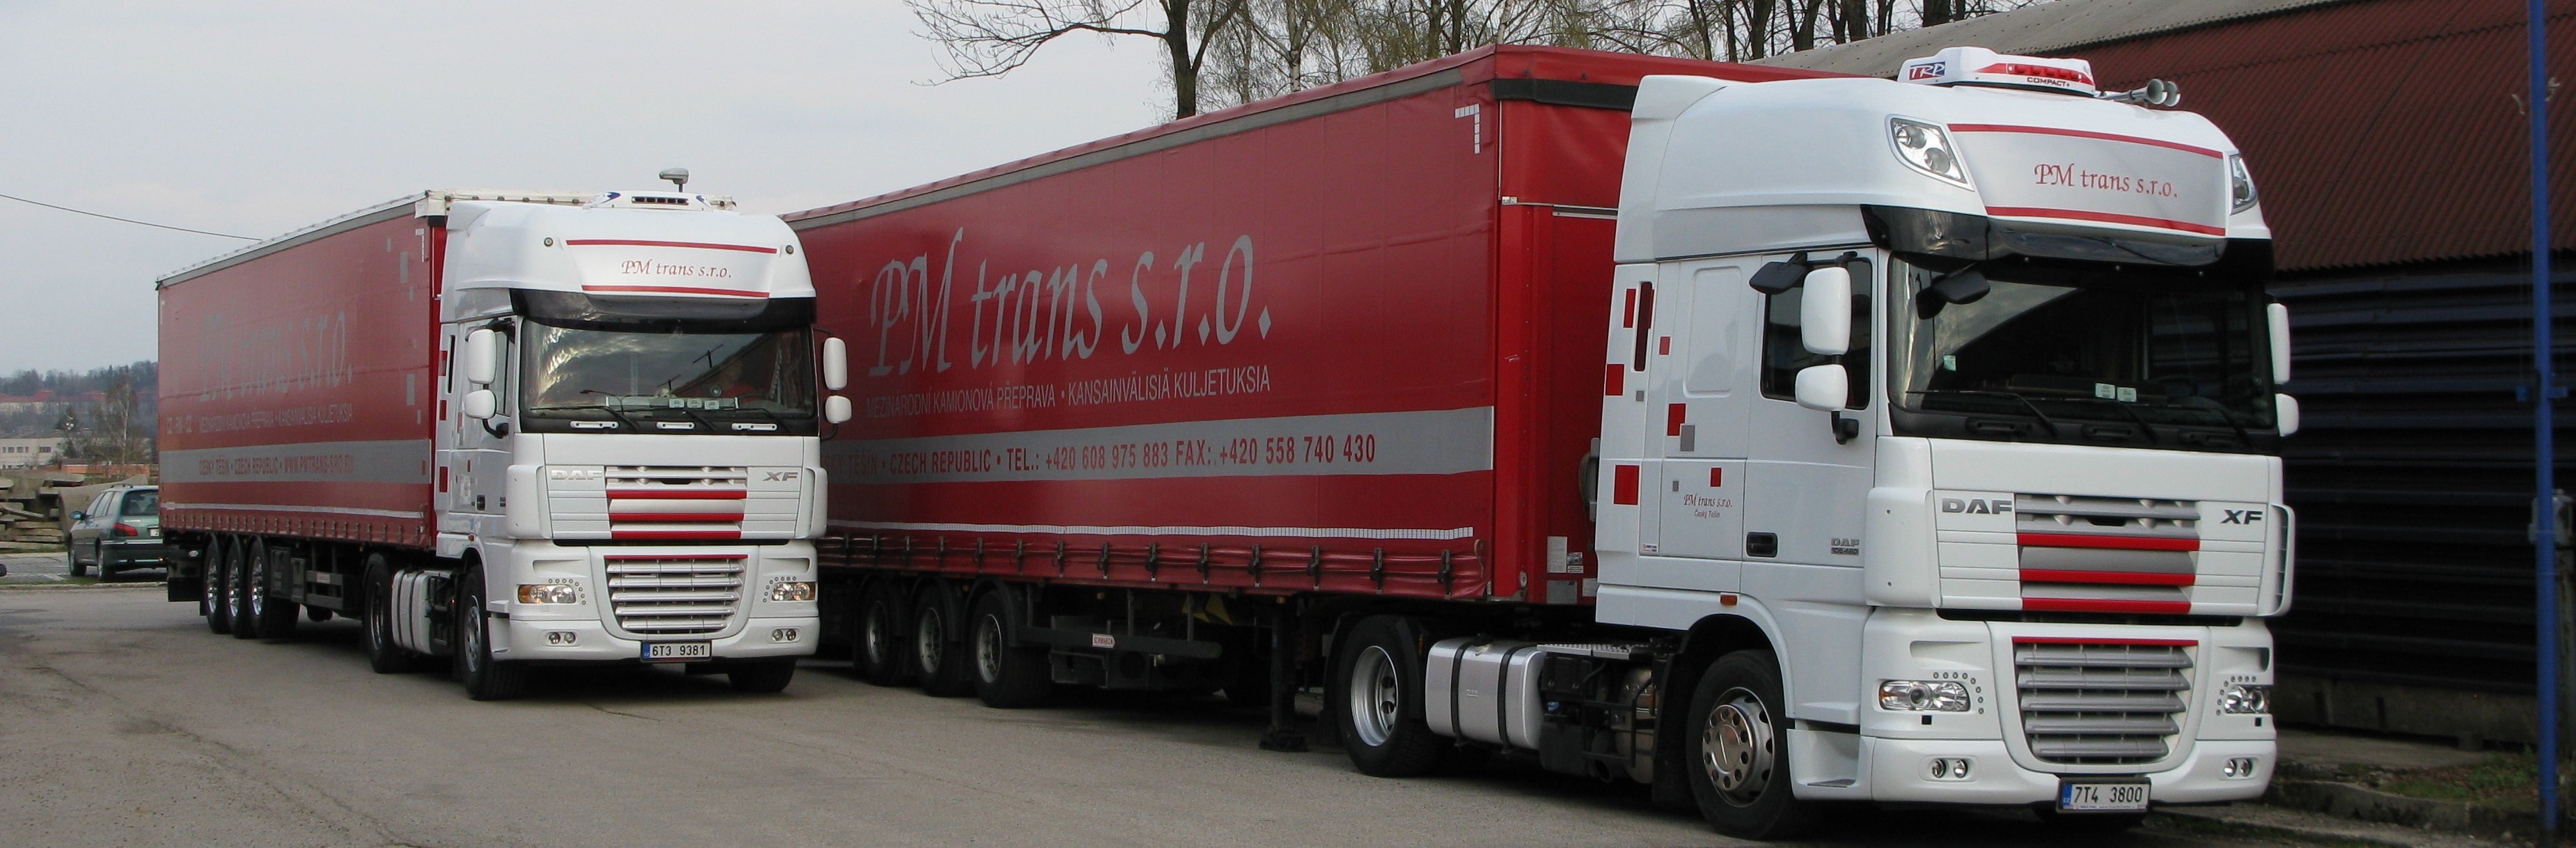 PM Trans, trucks